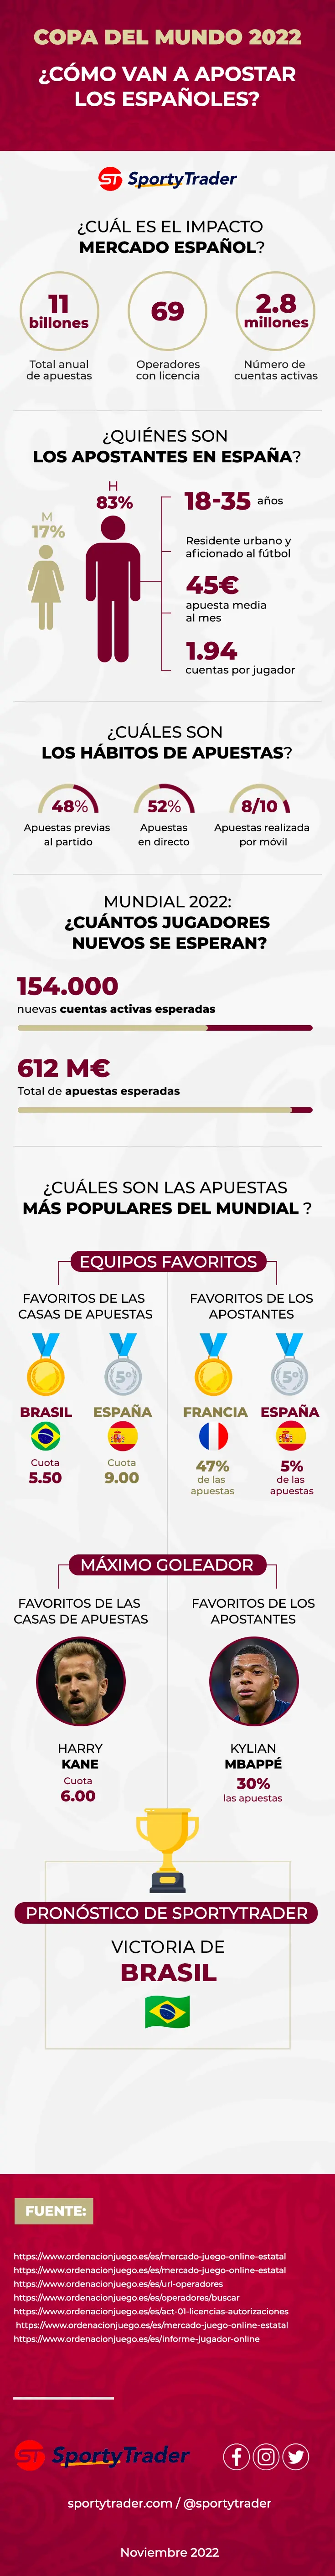 Infografía: ¿Cómo apostarán los españoles durante el Mundial 2022?